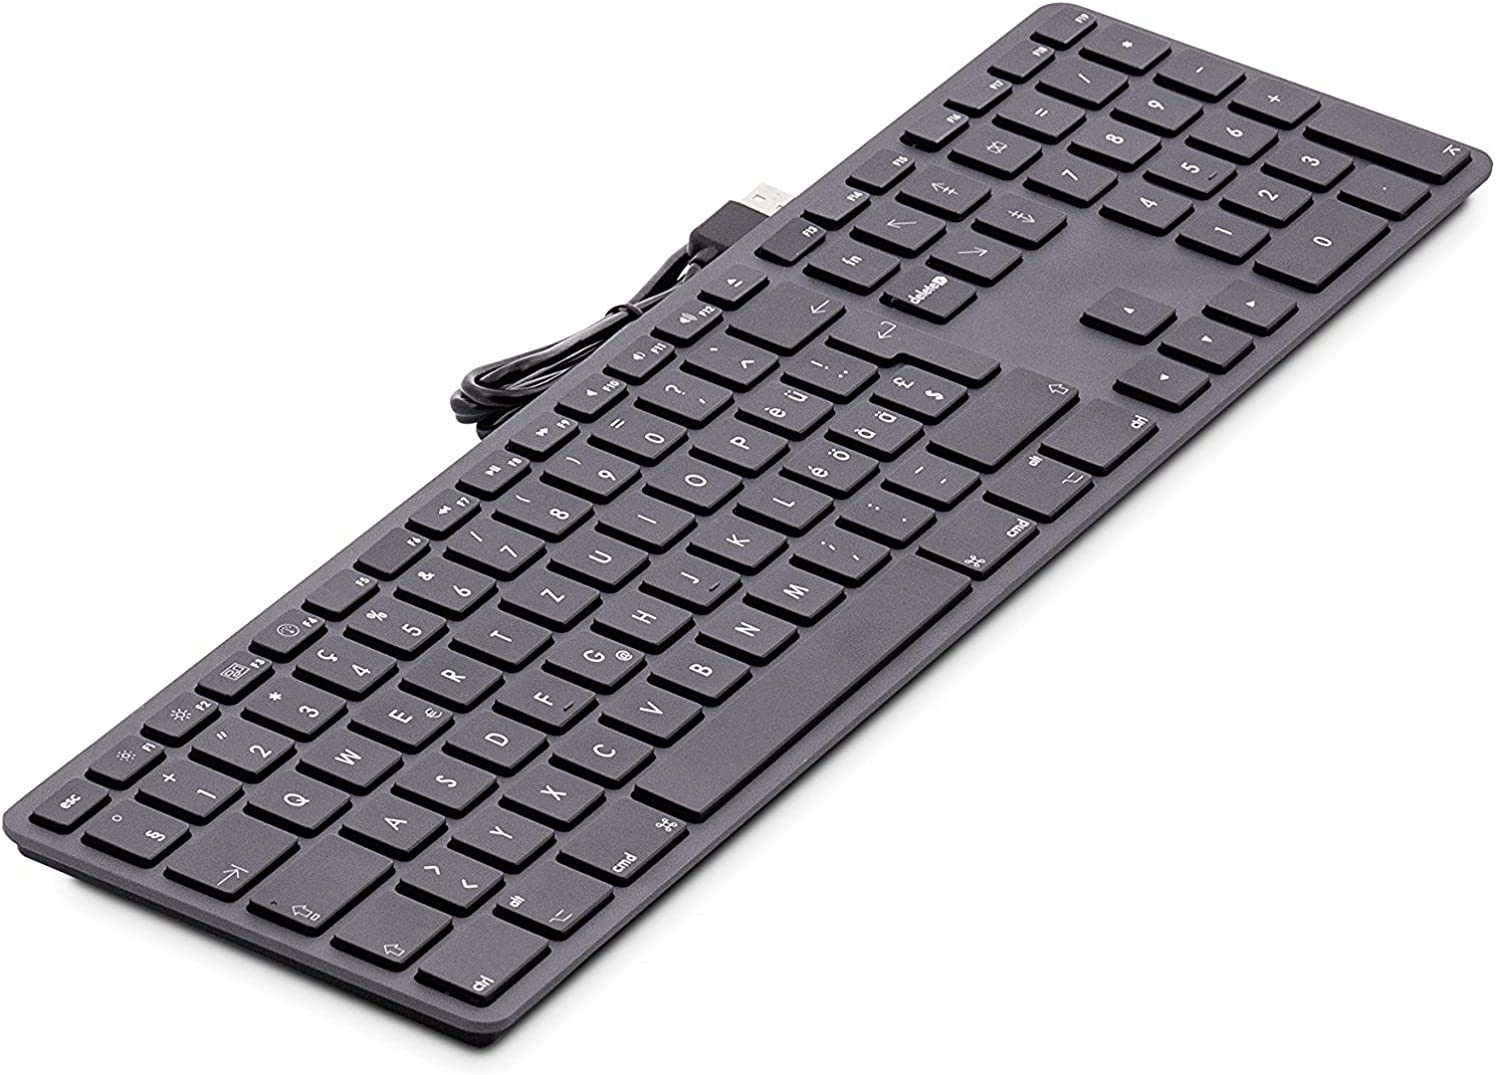 Echter toekomst Secretaris LMP - Aluminium toetsenbord voor Apple iMac met dubbele USB aansluitin |  Case2go.nl